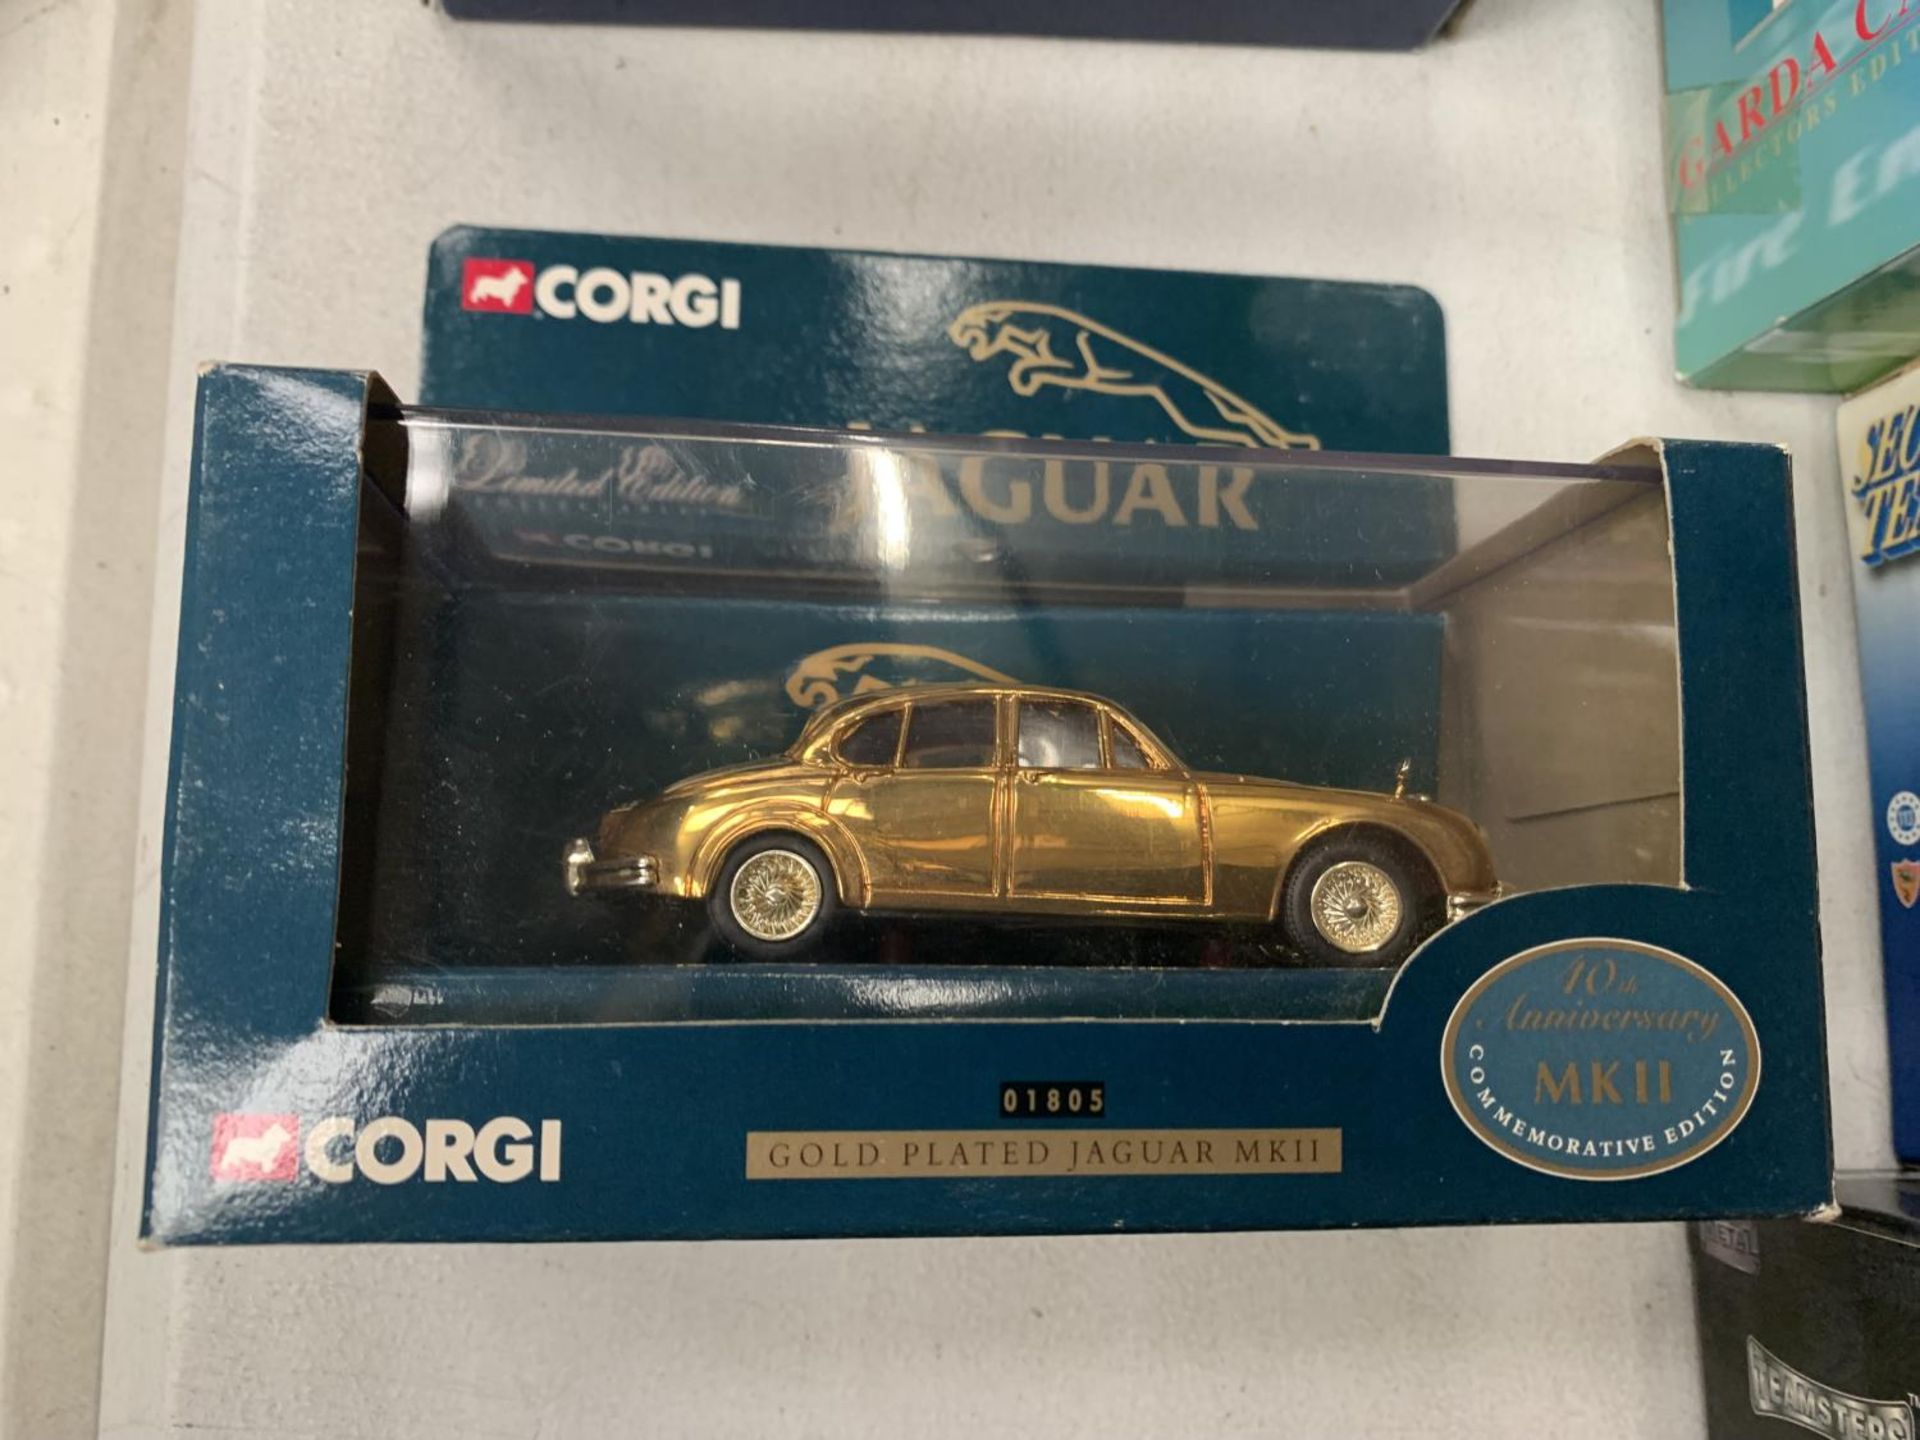 A BOXED CORGI 10TH ANNIVERSARY COMMEMORATIVE EDITION GOLD PLATED JAGUAR MK11